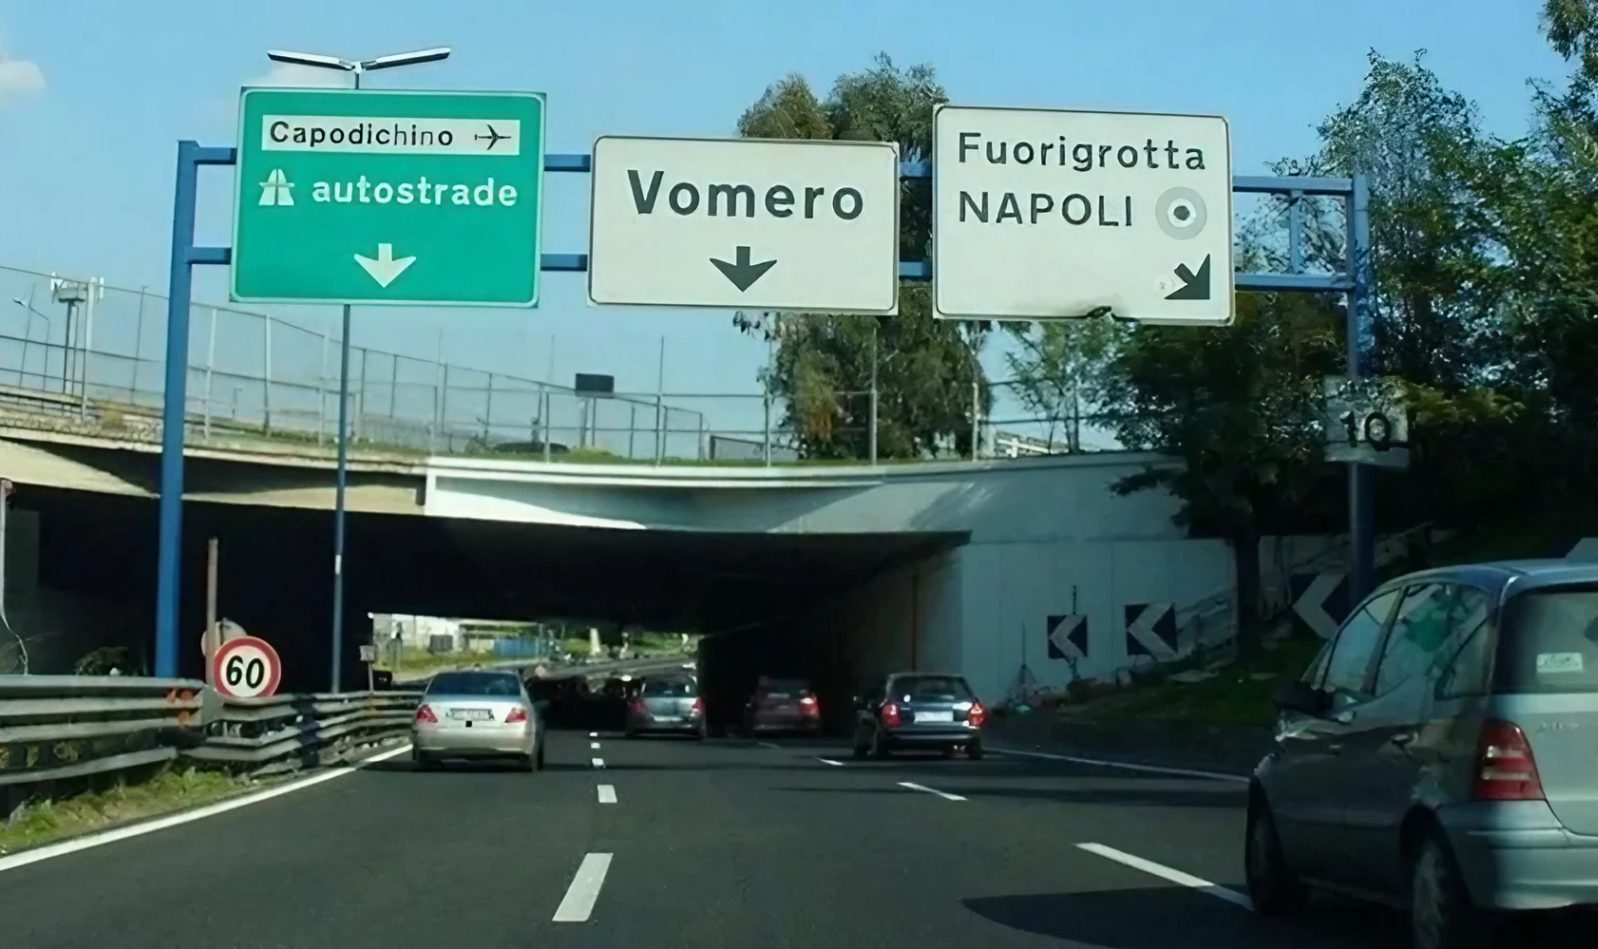 ナポリ環状道路、ヴォメロ・フオリグロッタ出口